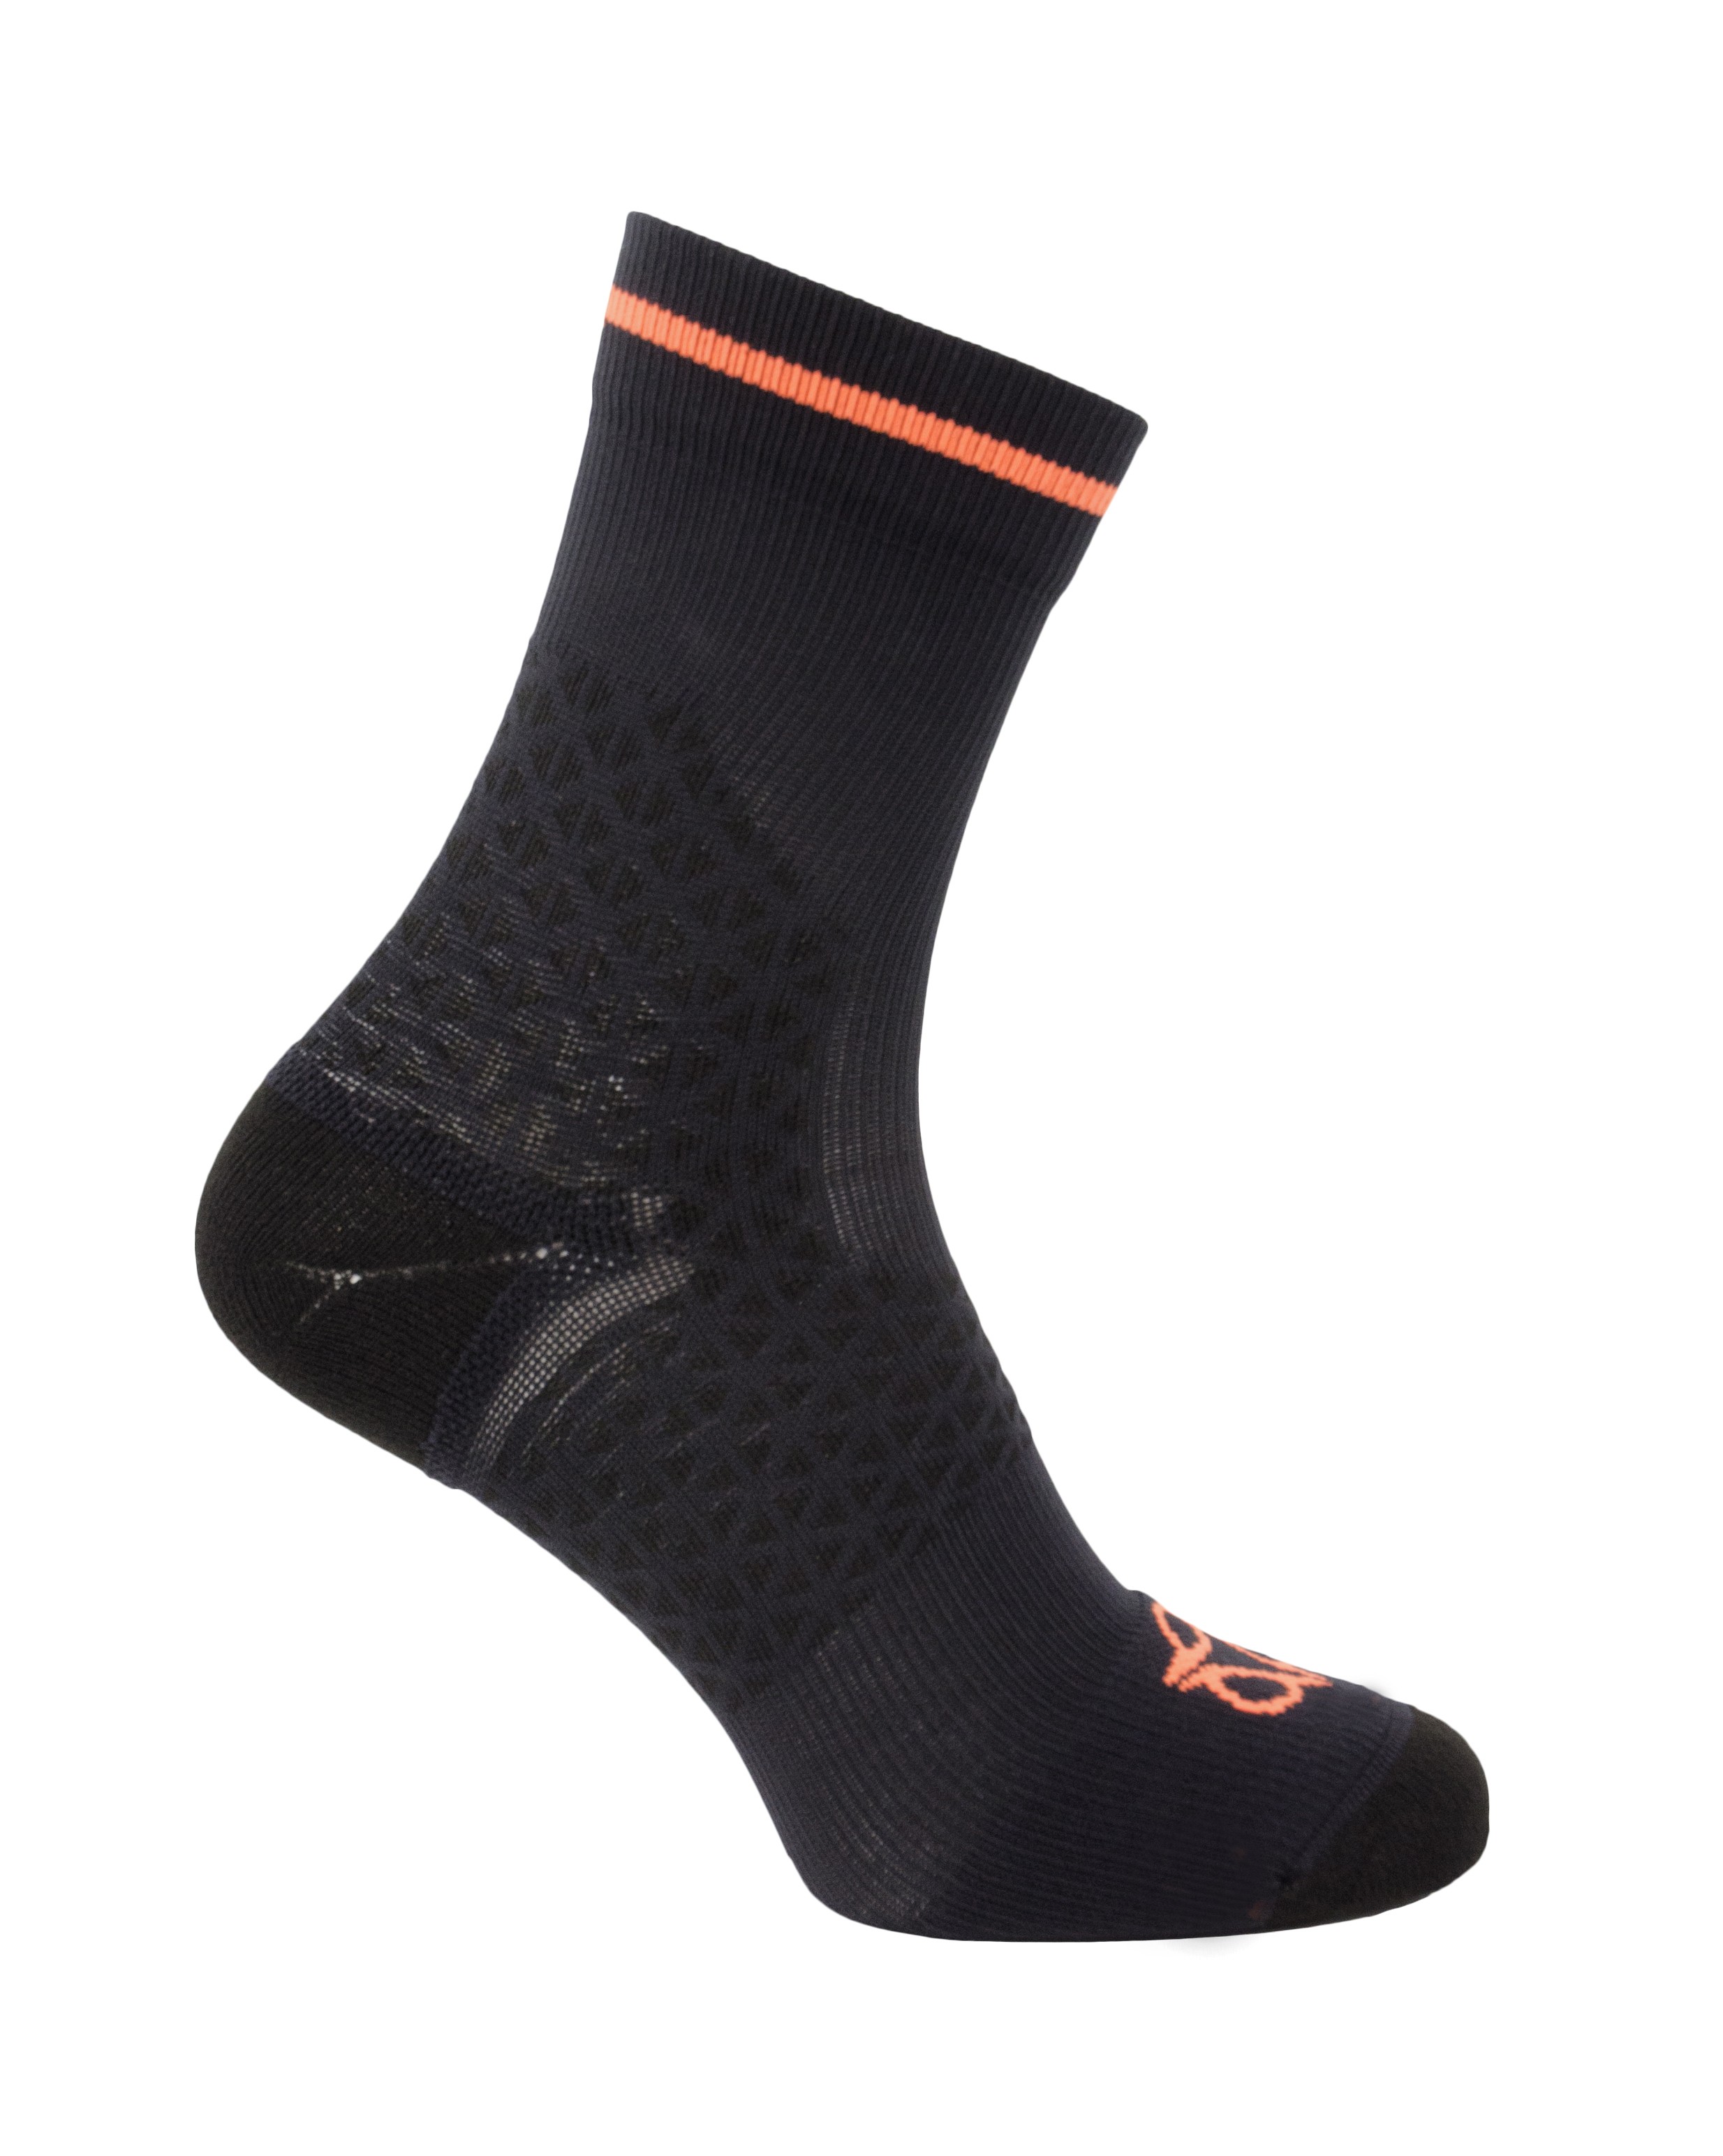 AGU Pro Summer Socks Black Orange